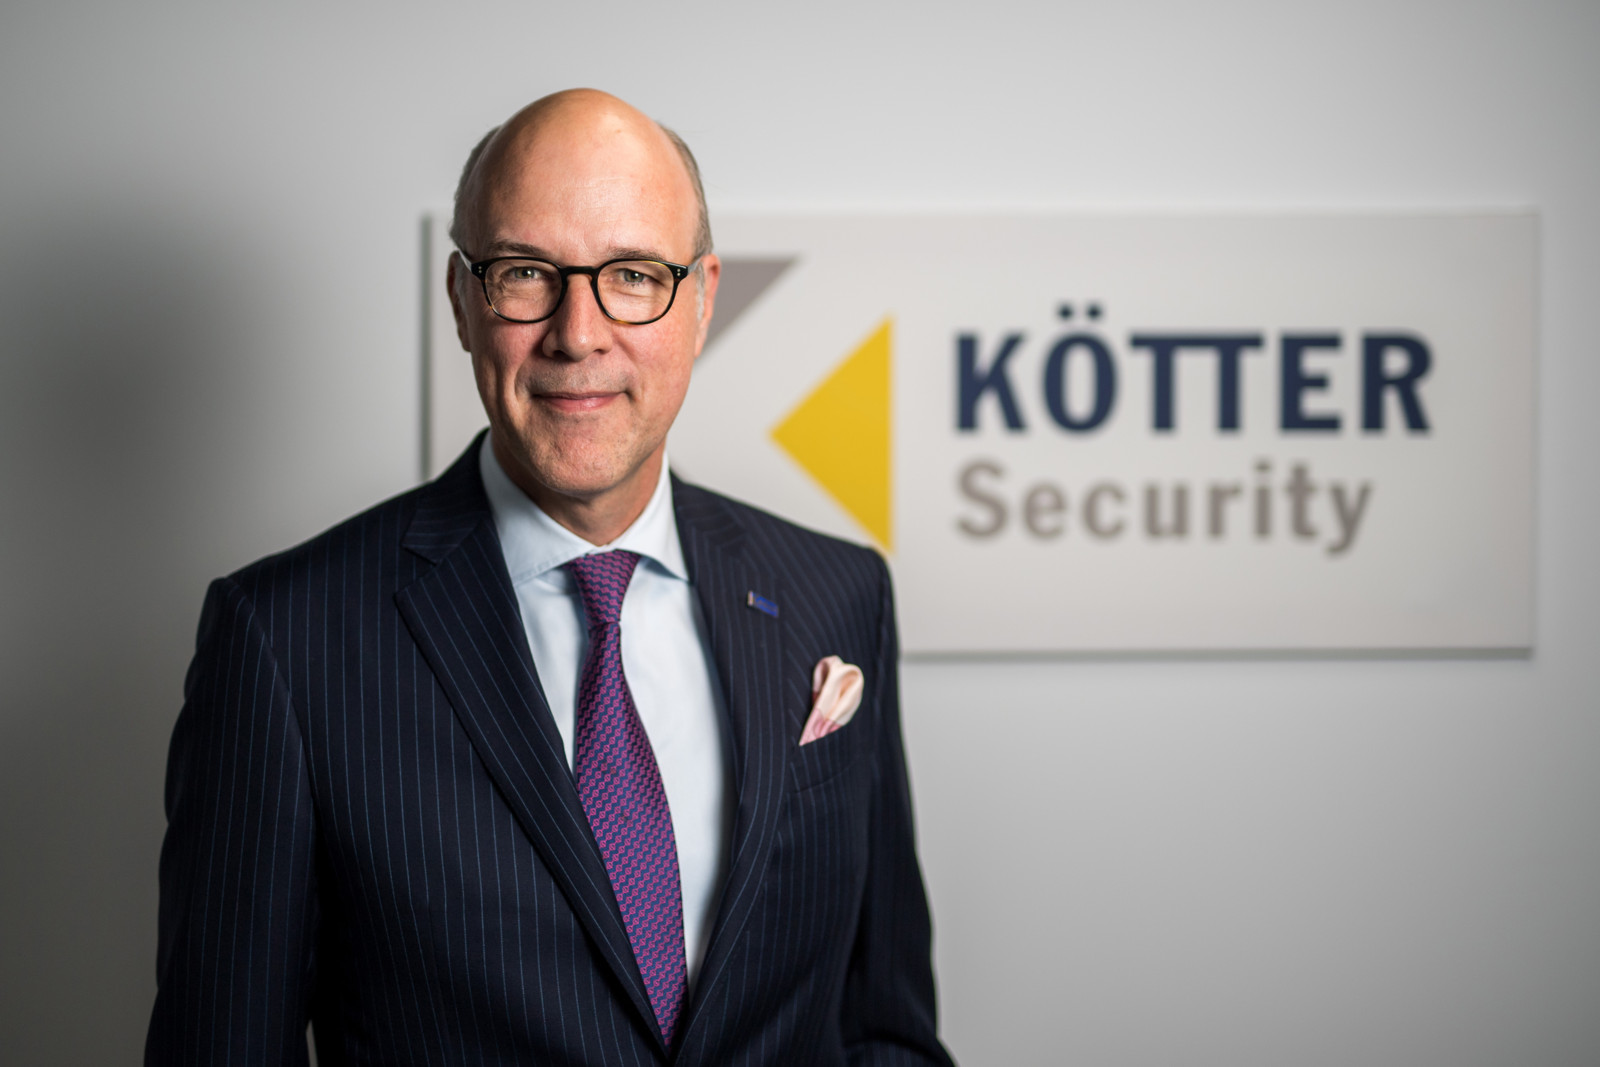 Die Coess hat Friedrich P. Kötter erneut zum ersten Vizepräsidenten des europäischen Dachverbandes der privaten Sicherheitsdienste gewählt.